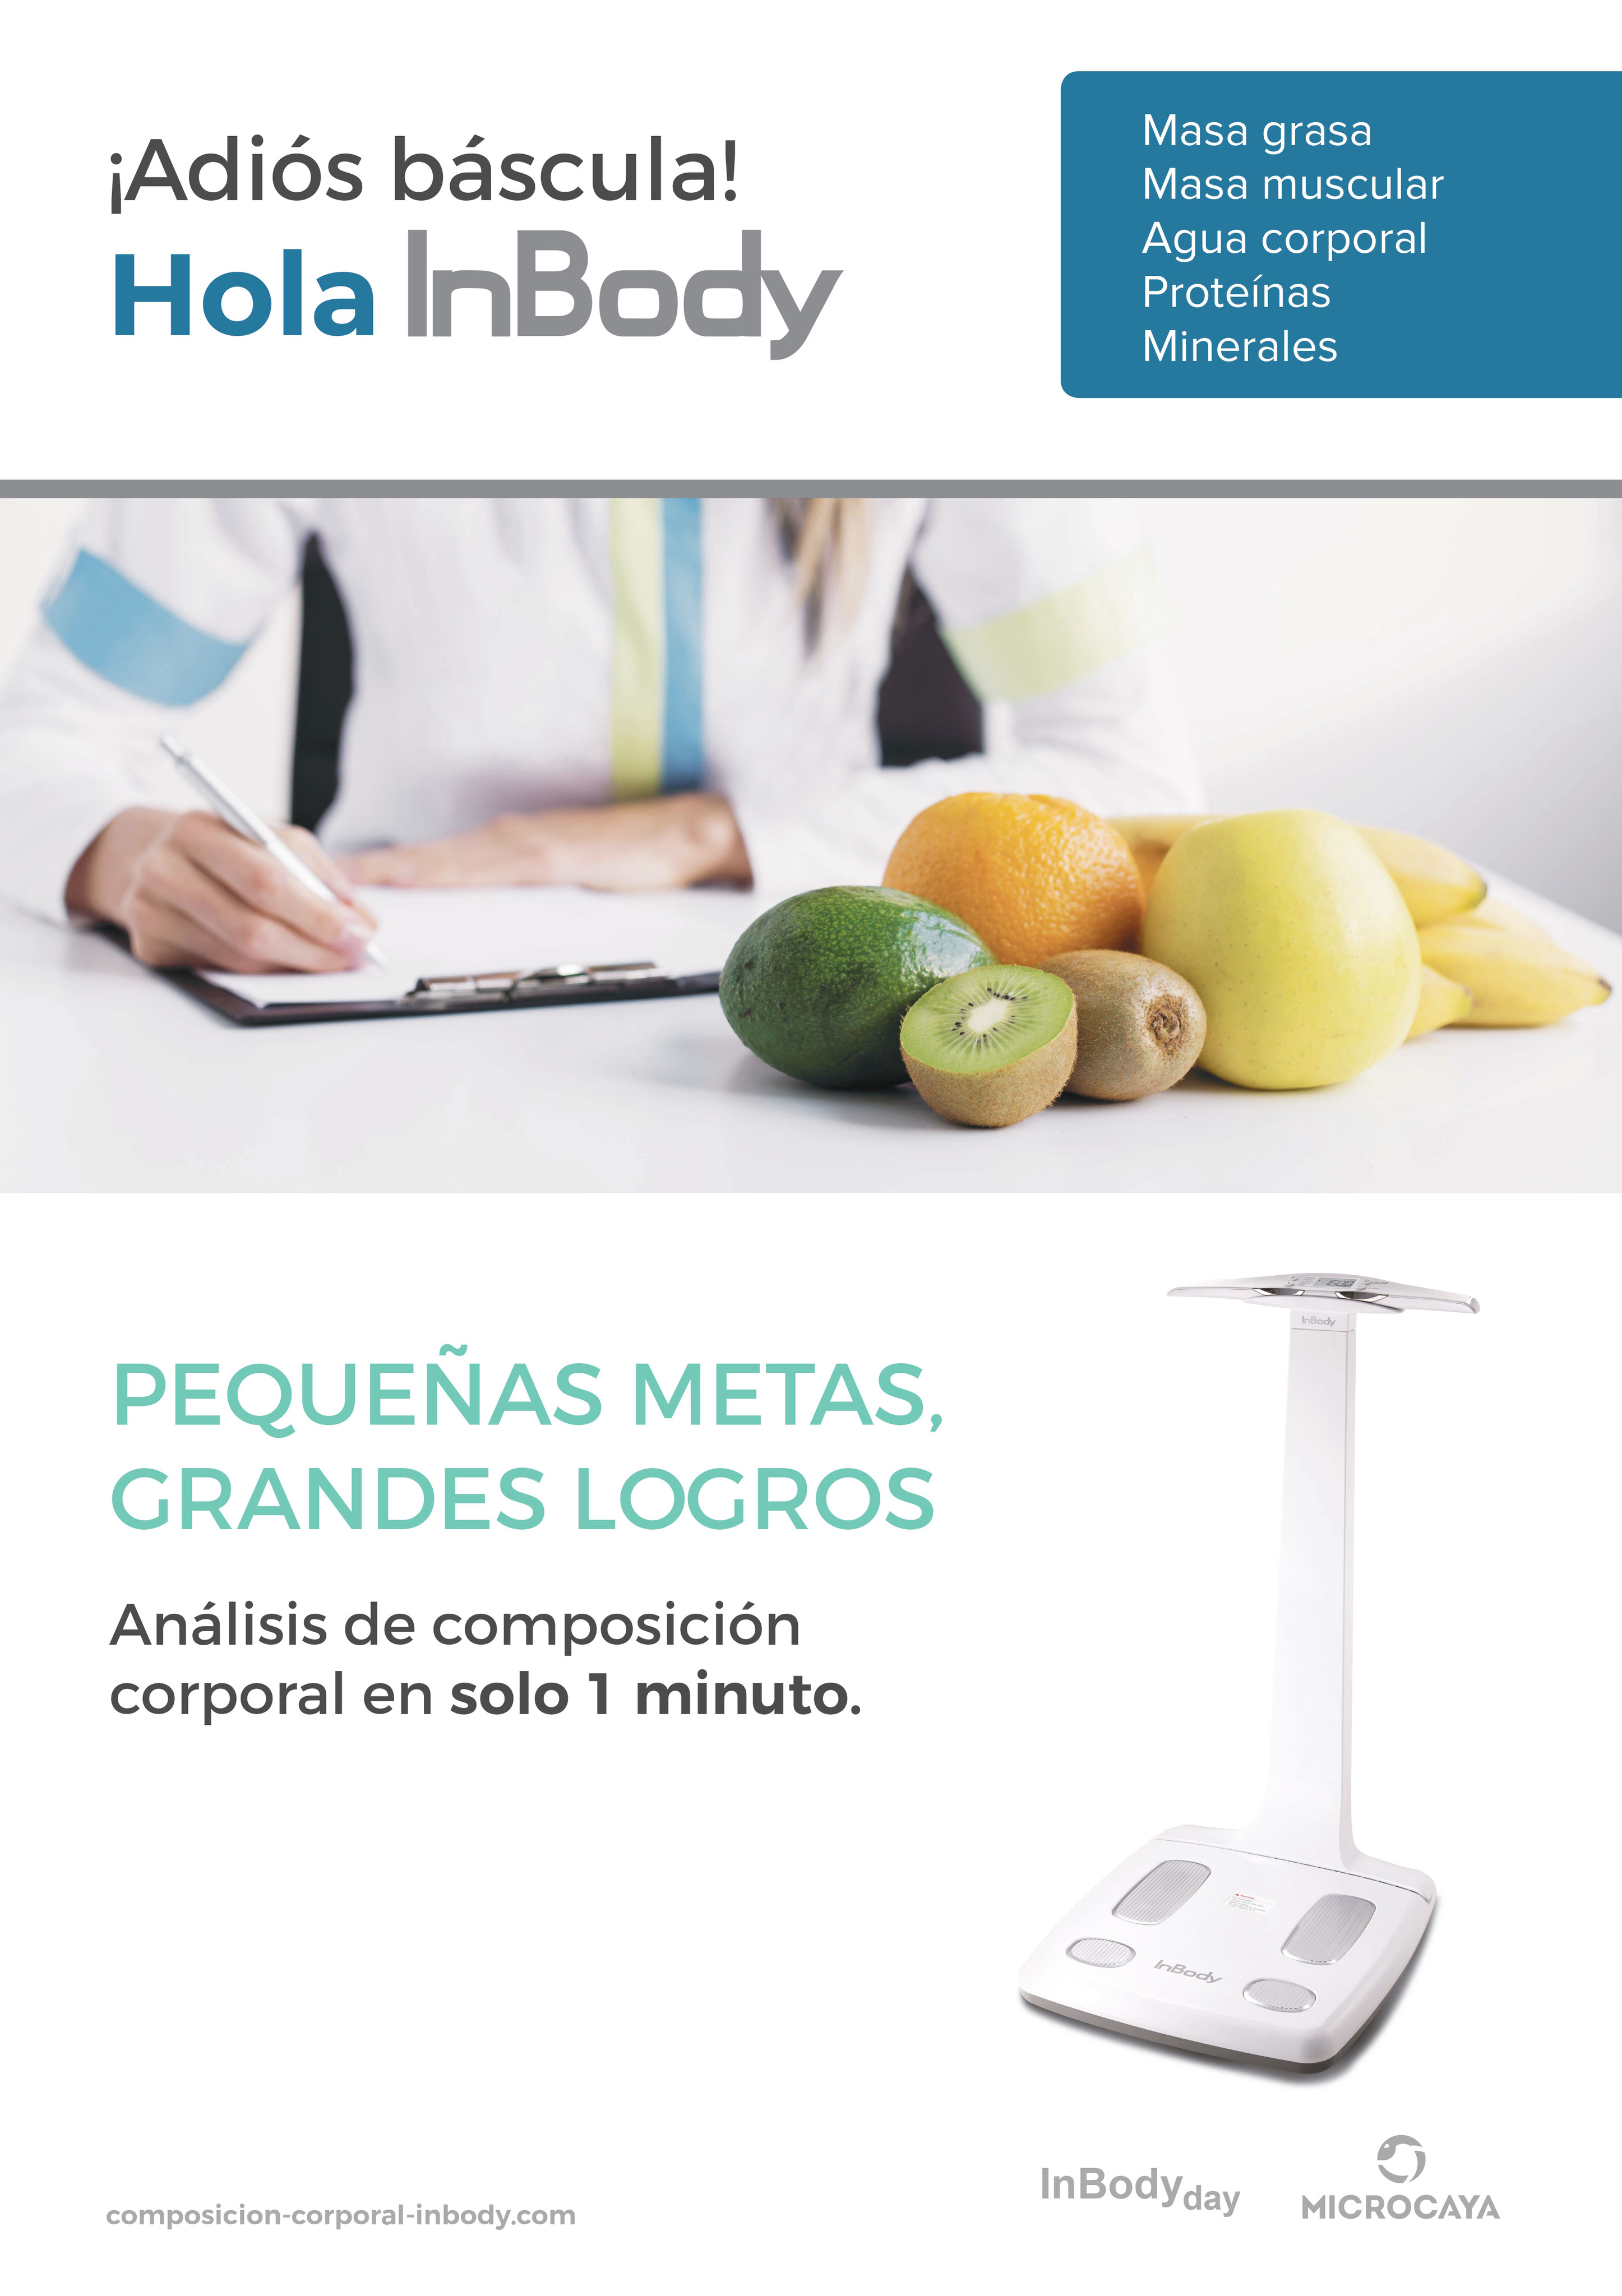 InBody - Última tecnología en análisis de composición corporal -  Nutricionista Cáceres. Centro de Nutrición en Cáceres La Primera Medicina